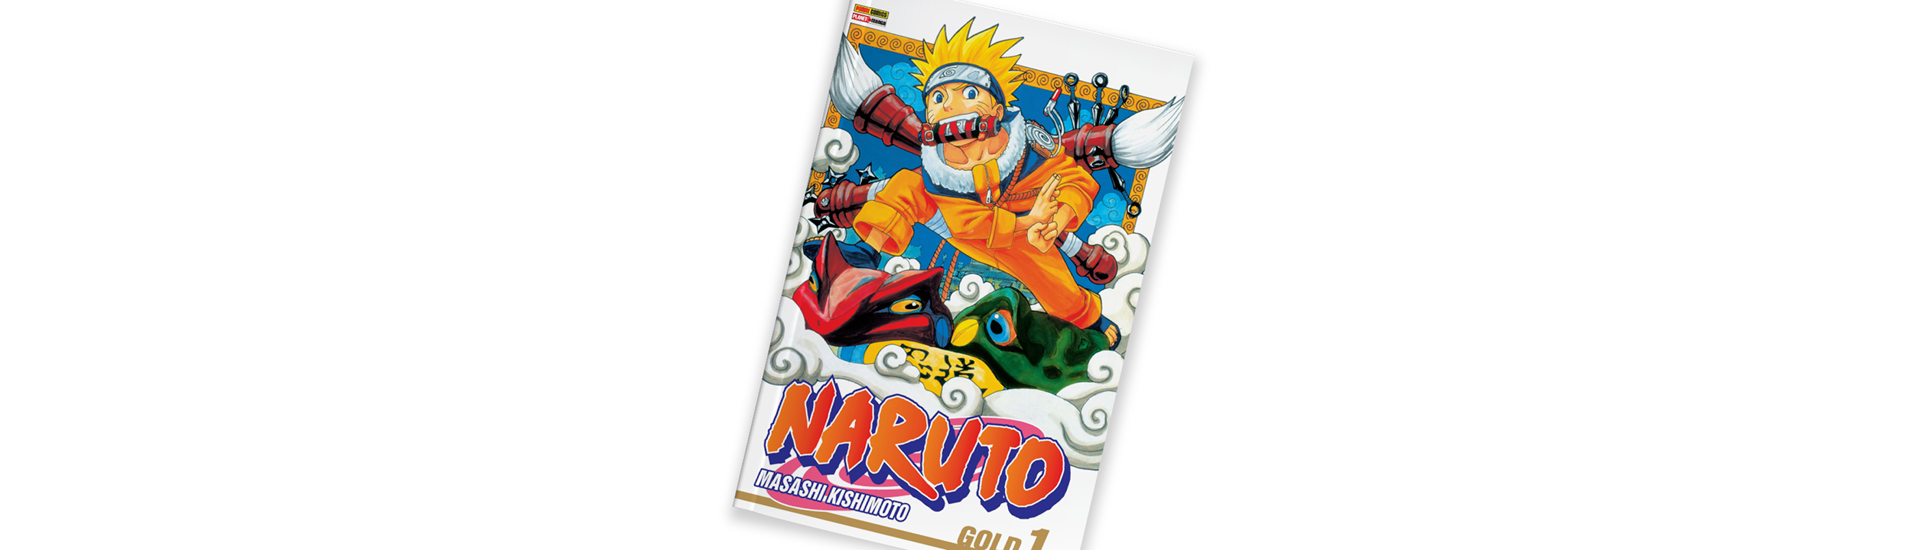   Capa do mangá 'Naruto', de Masashi Kishimoto em fundo branco. 